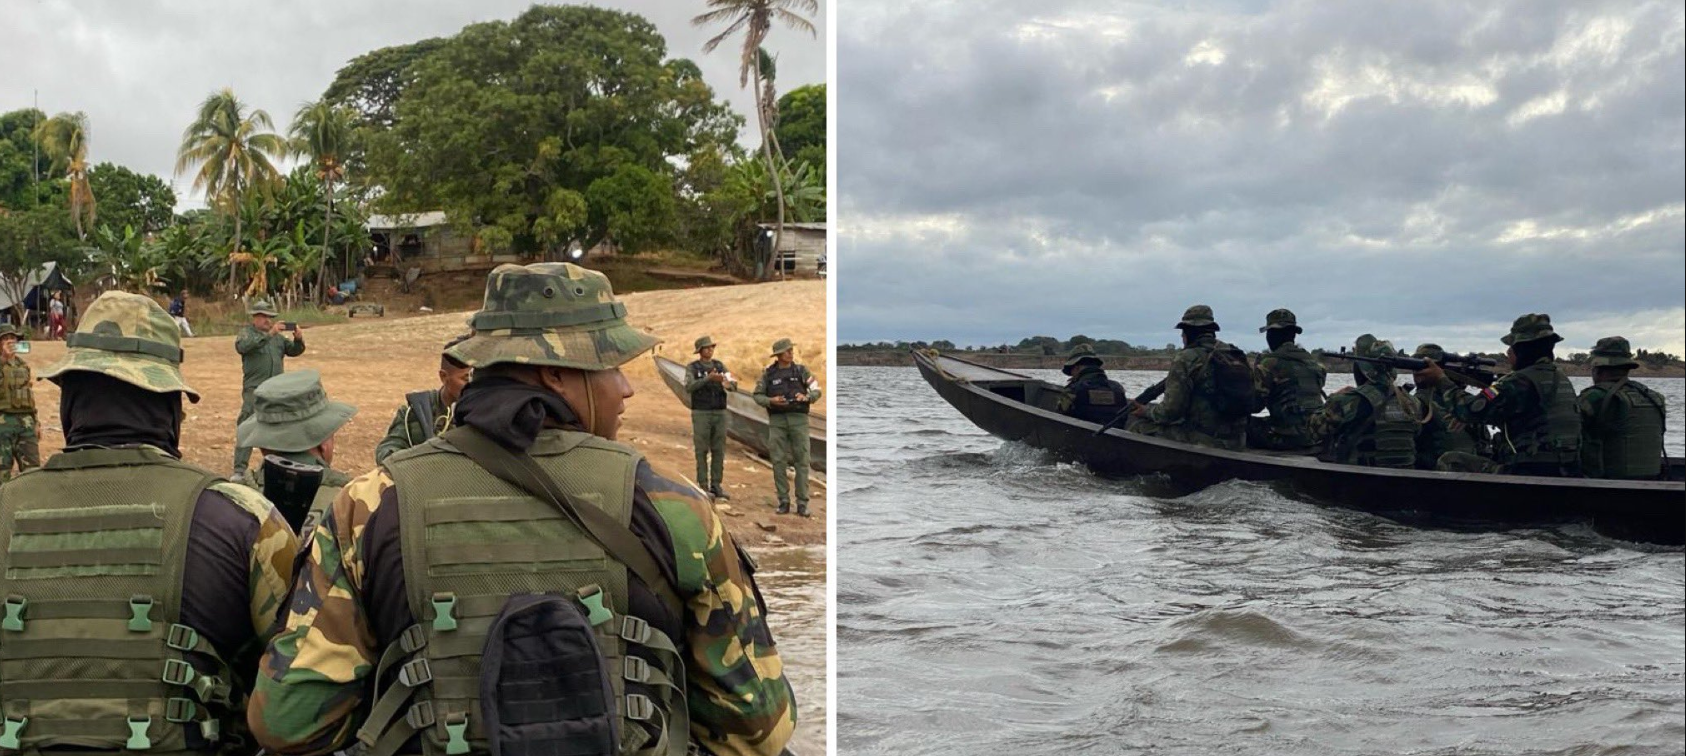 Un operativo militar detiene a 9 personas por realizar actividades mineras ilegales en la región amazónica